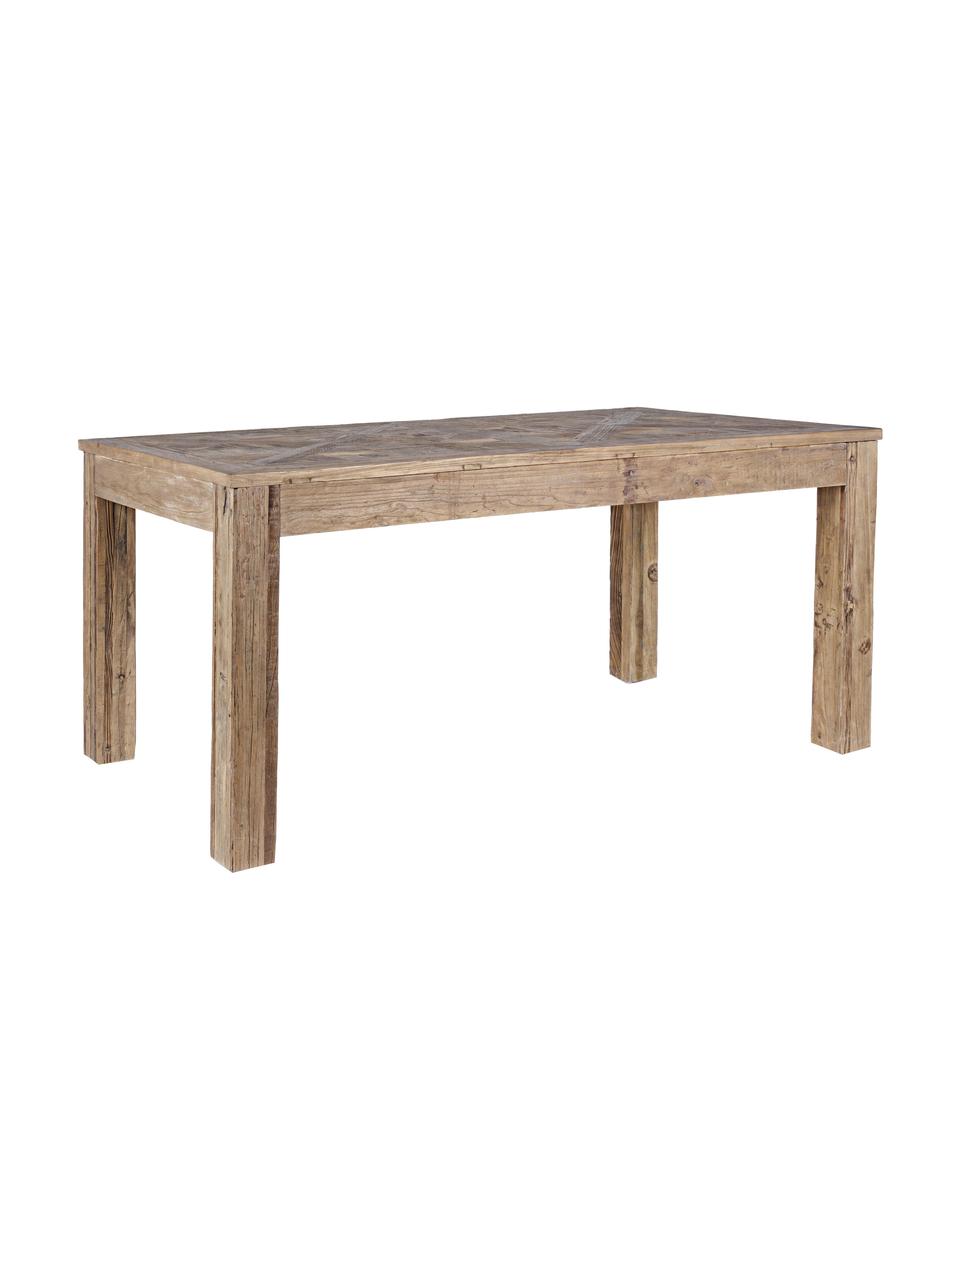 Tavolo in legno Kaily, Legno di olmo riciclato con finitura antica, Beige, Larg. 160 x Prof. 90 cm